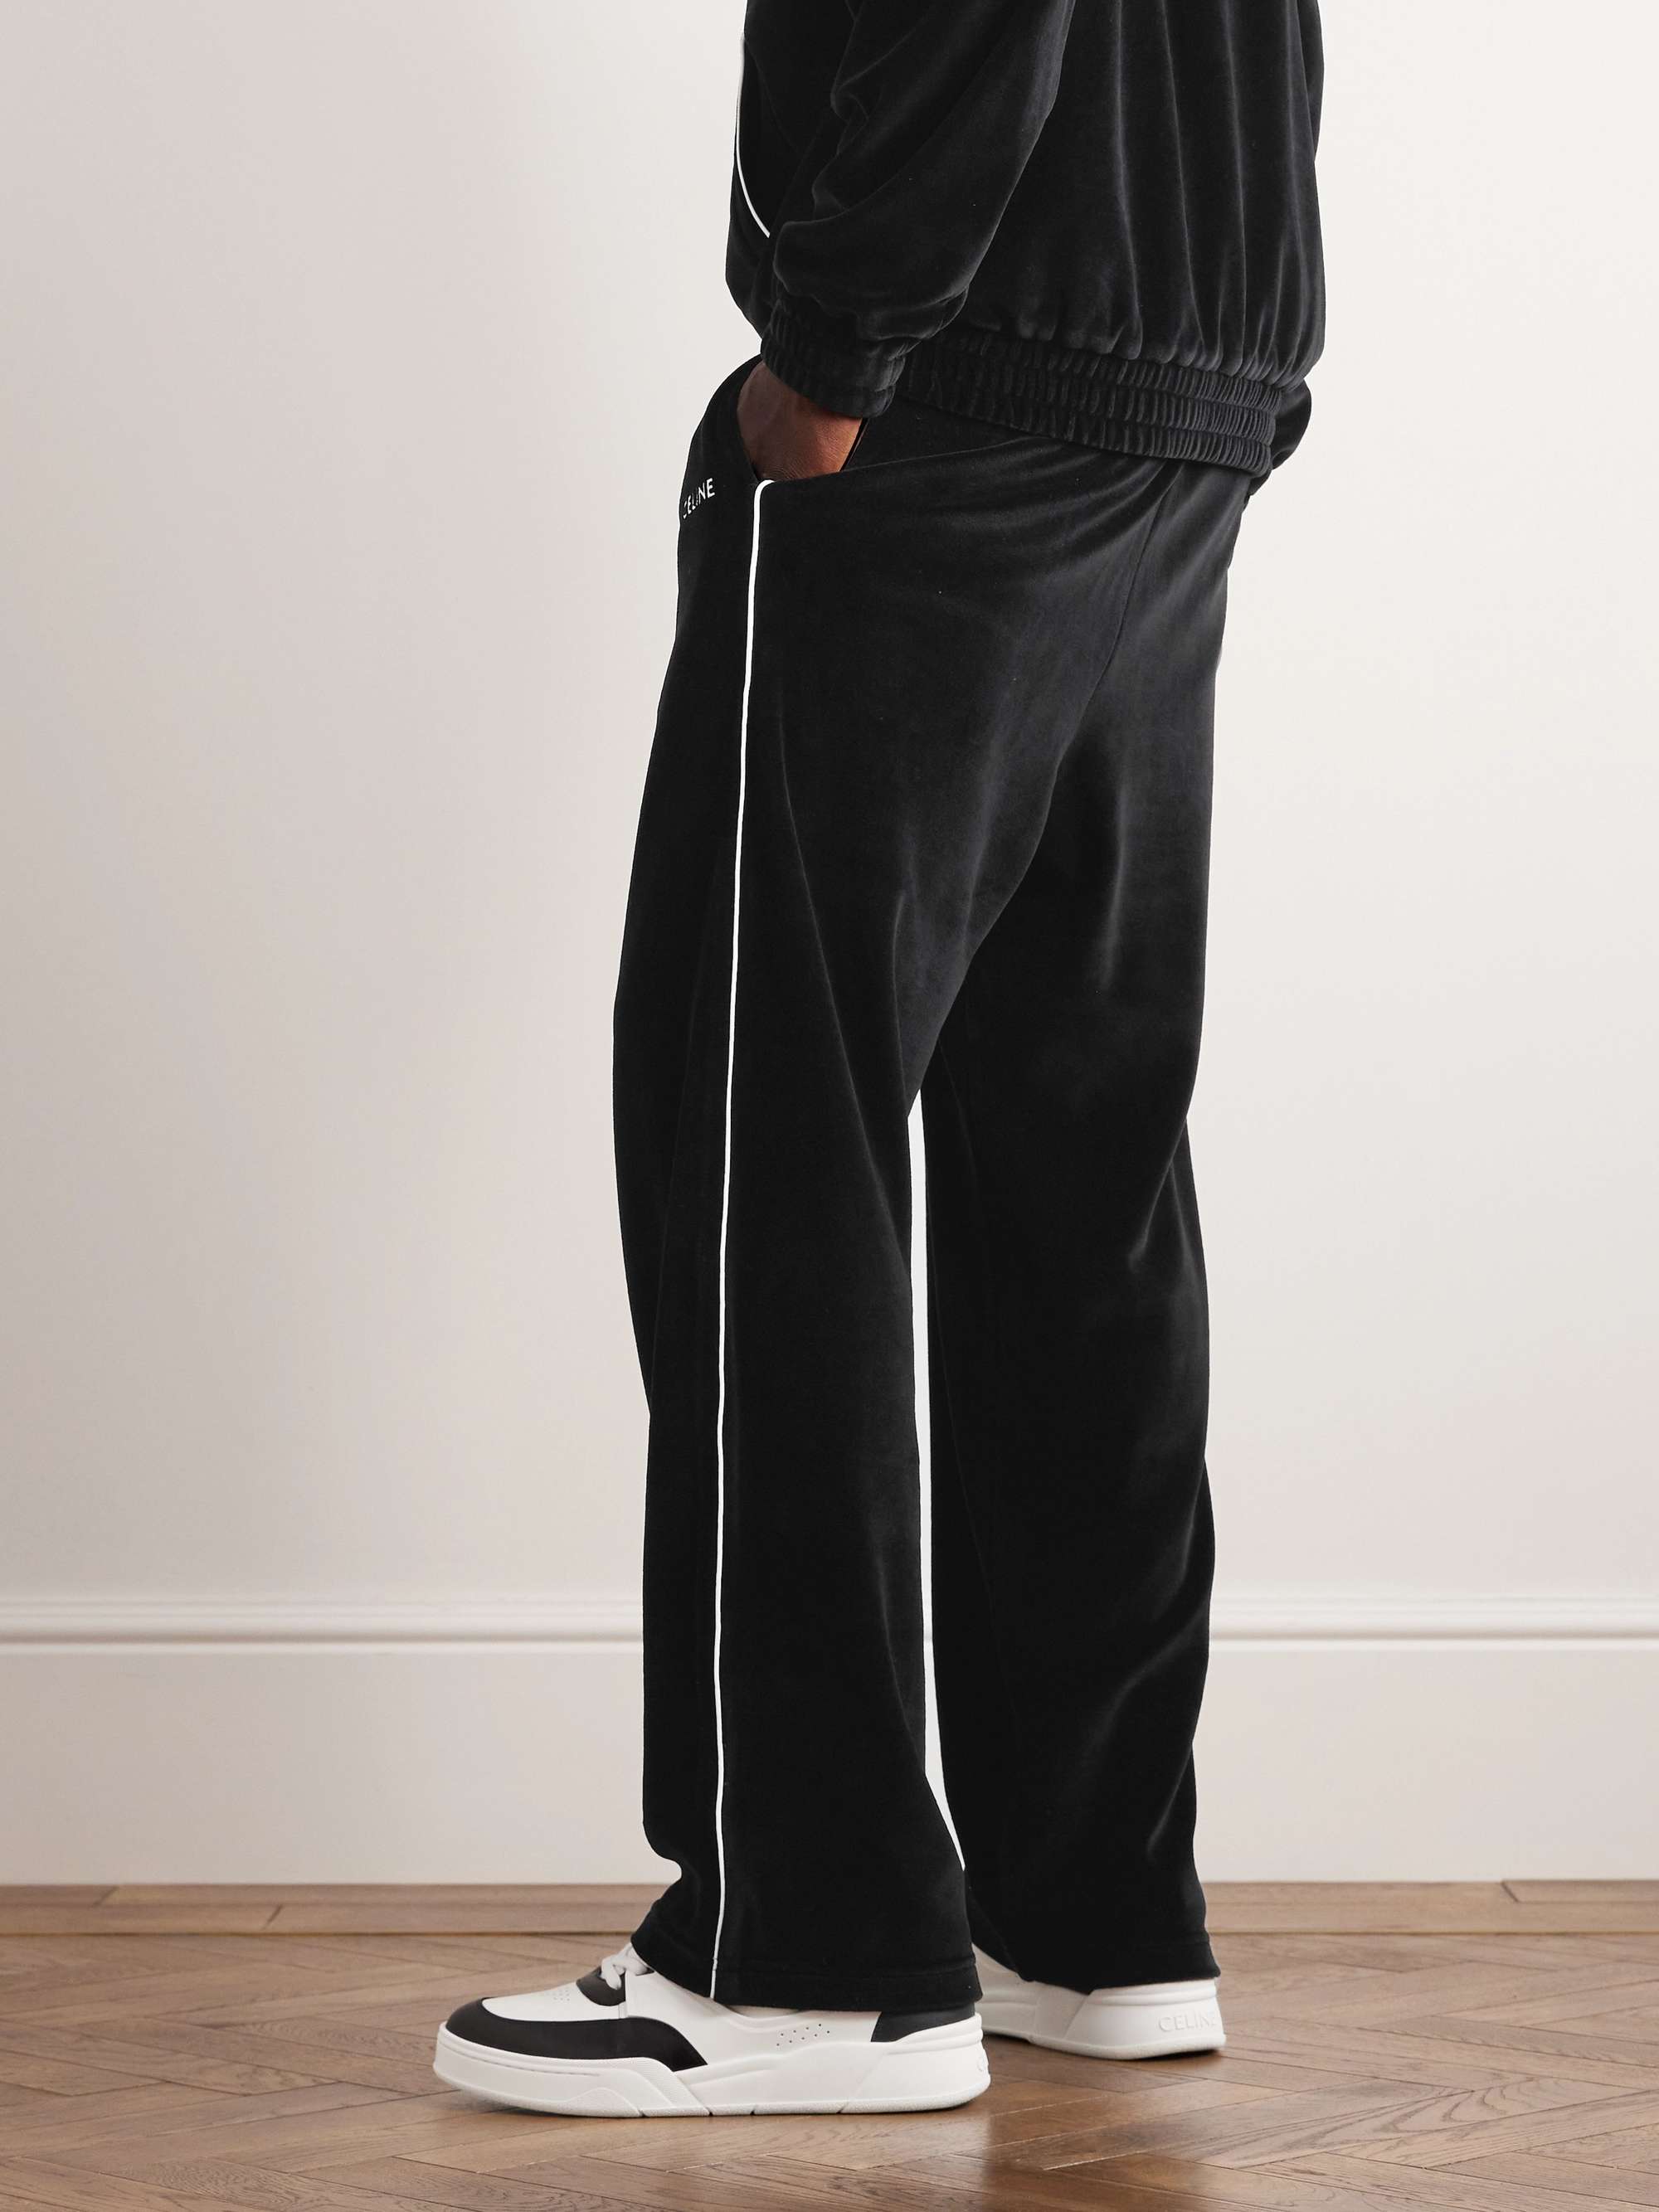 CELINE HOMME Straight-Leg Cotton-Blend Velour Track Pants for Men | MR ...